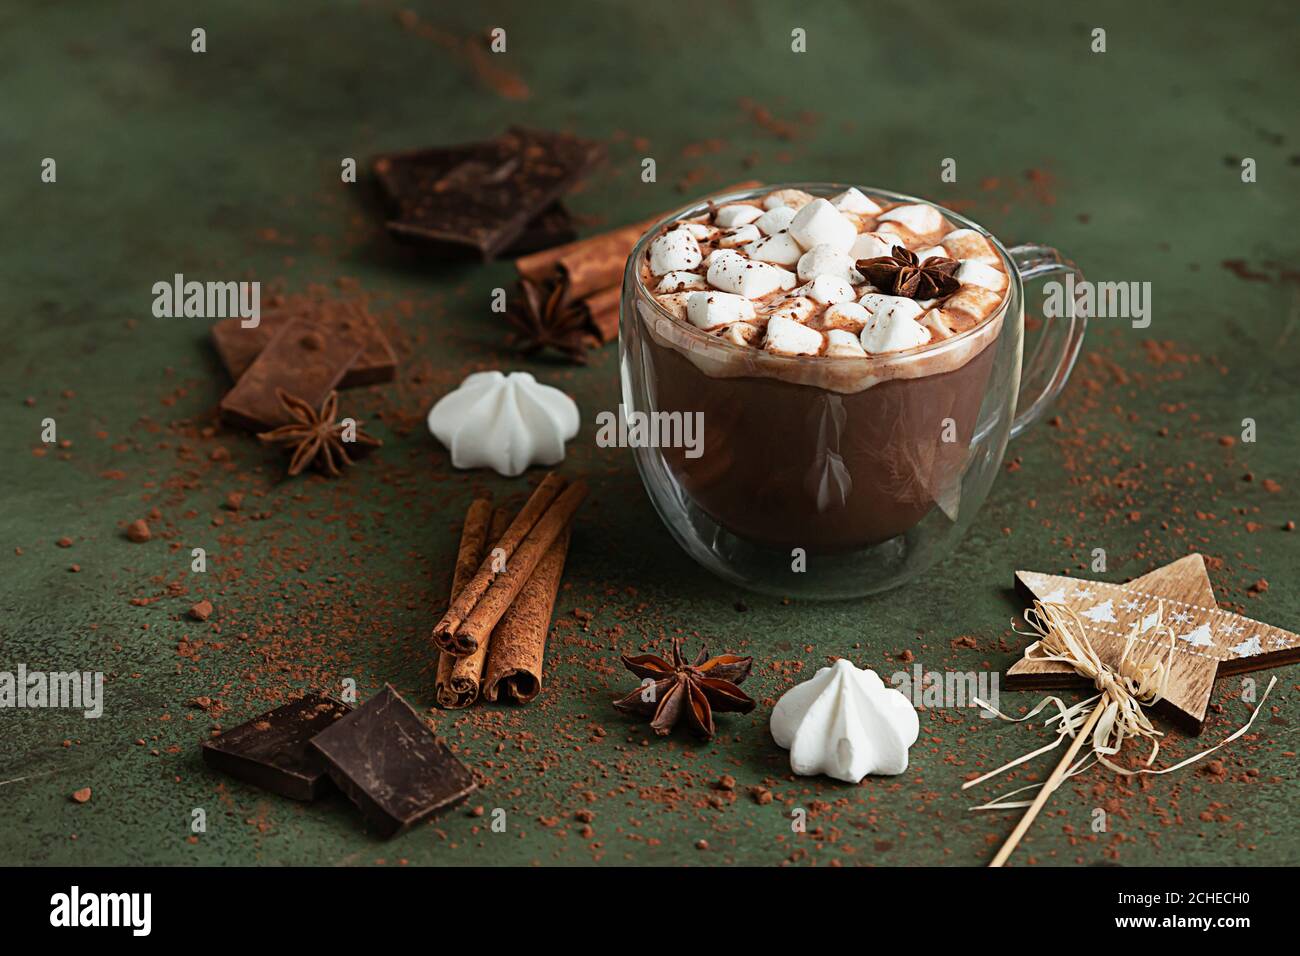 Glas Tasse heiße Schokolade oder Kakao mit Marshmallows und Anis Stern, Stücke von Schokolade, Meringue und Gewürze auf grünem Hintergrund. Traditioneller Winter Stockfoto